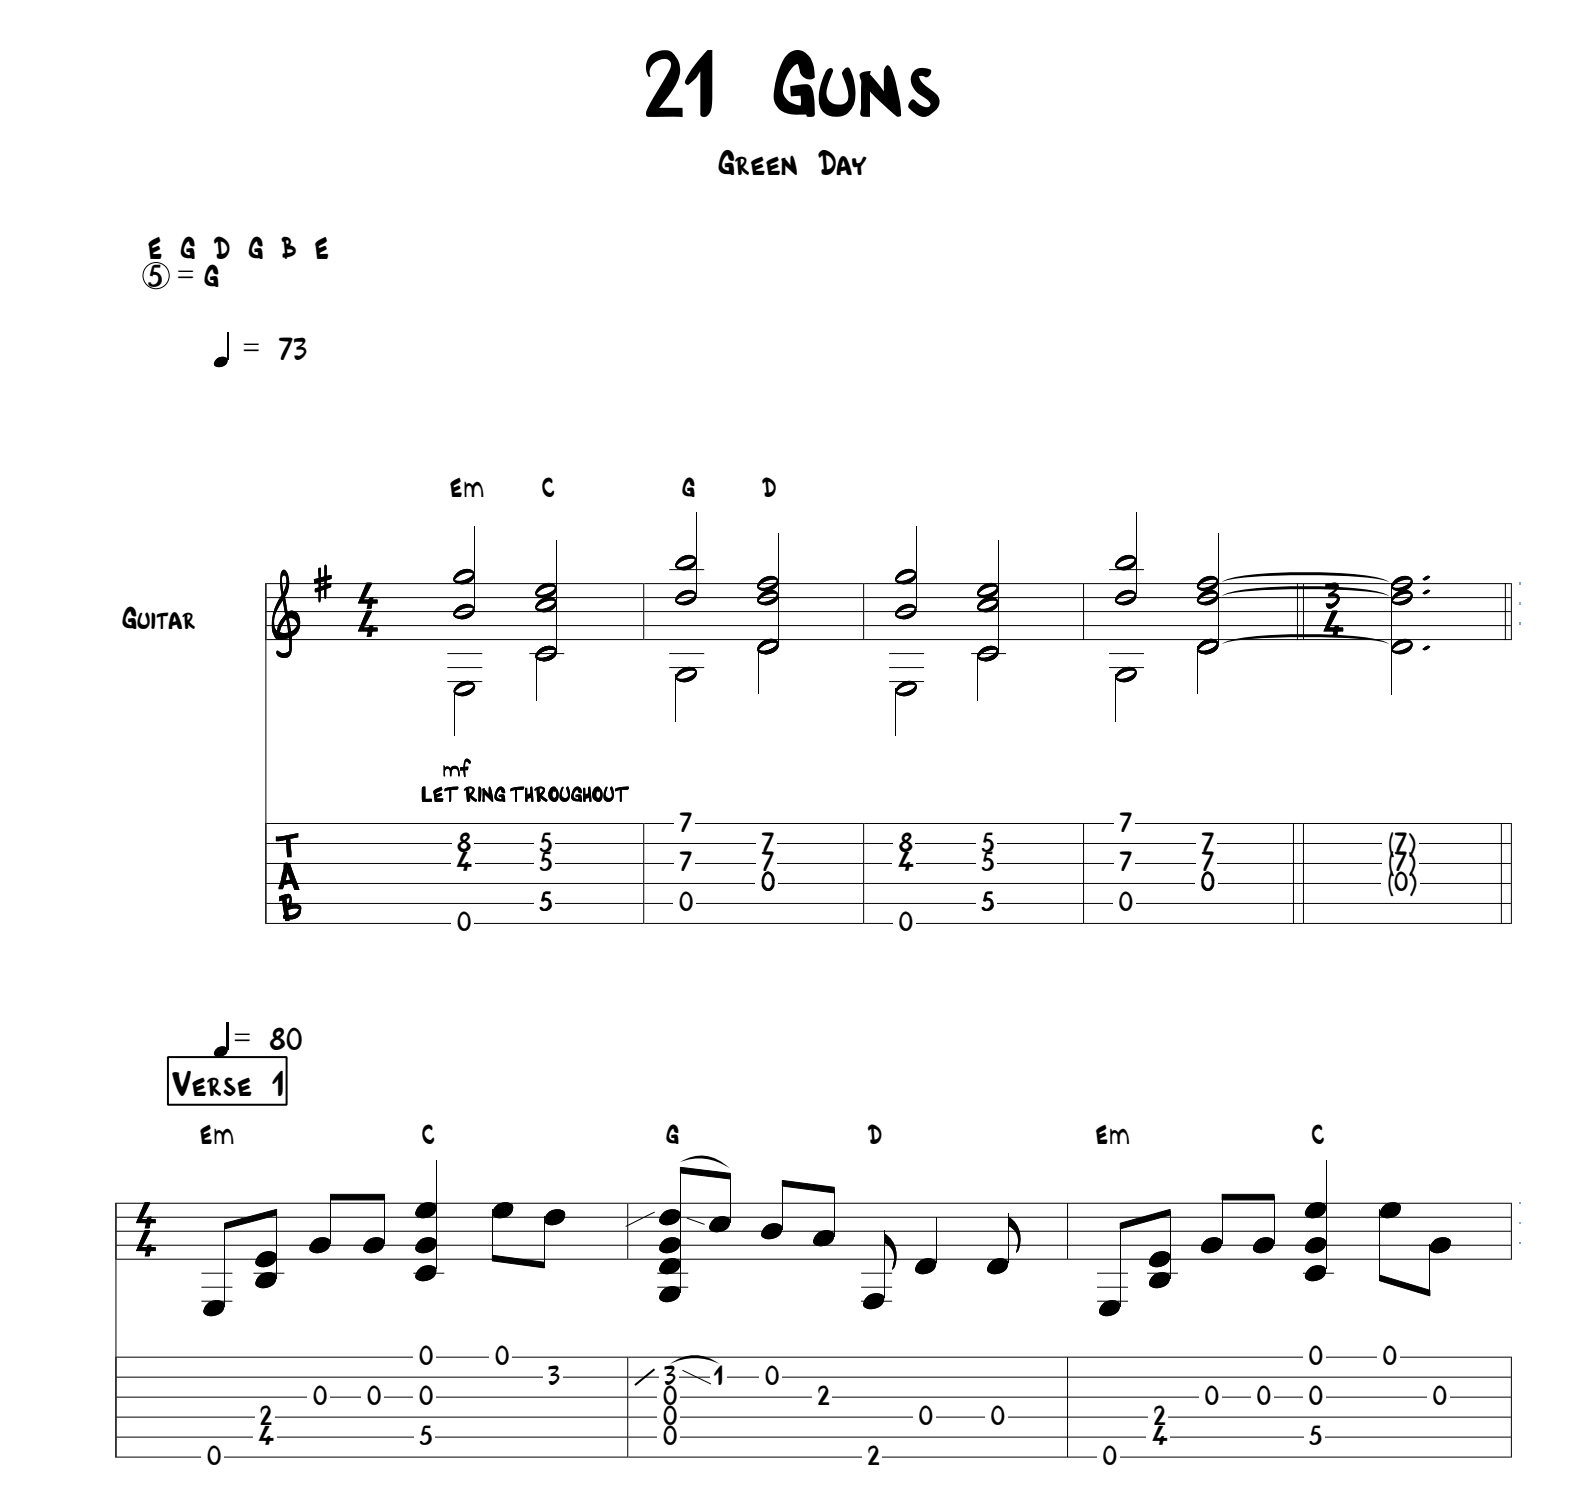 guitar chords for 21 guns